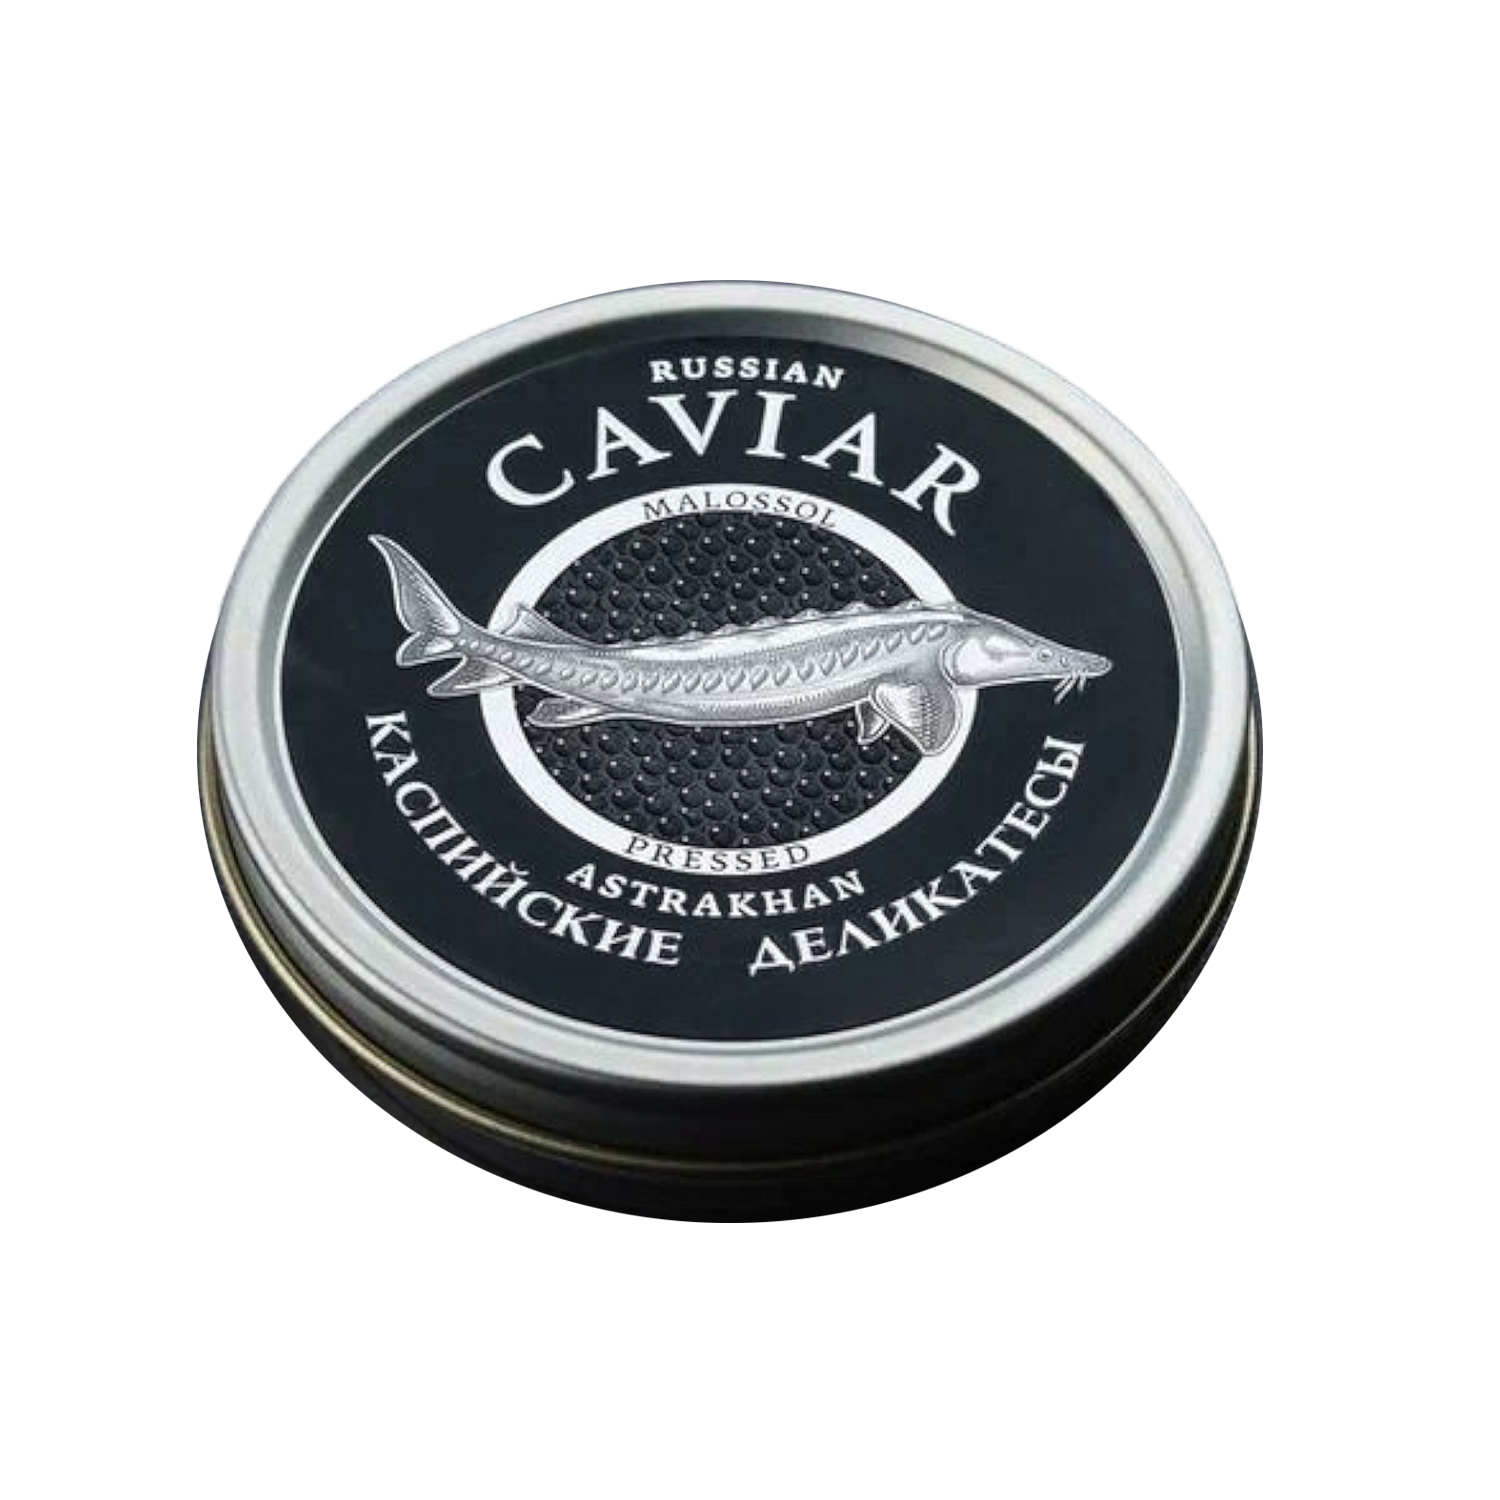 Черная икра Caviar осетровая паюсная, 50 г